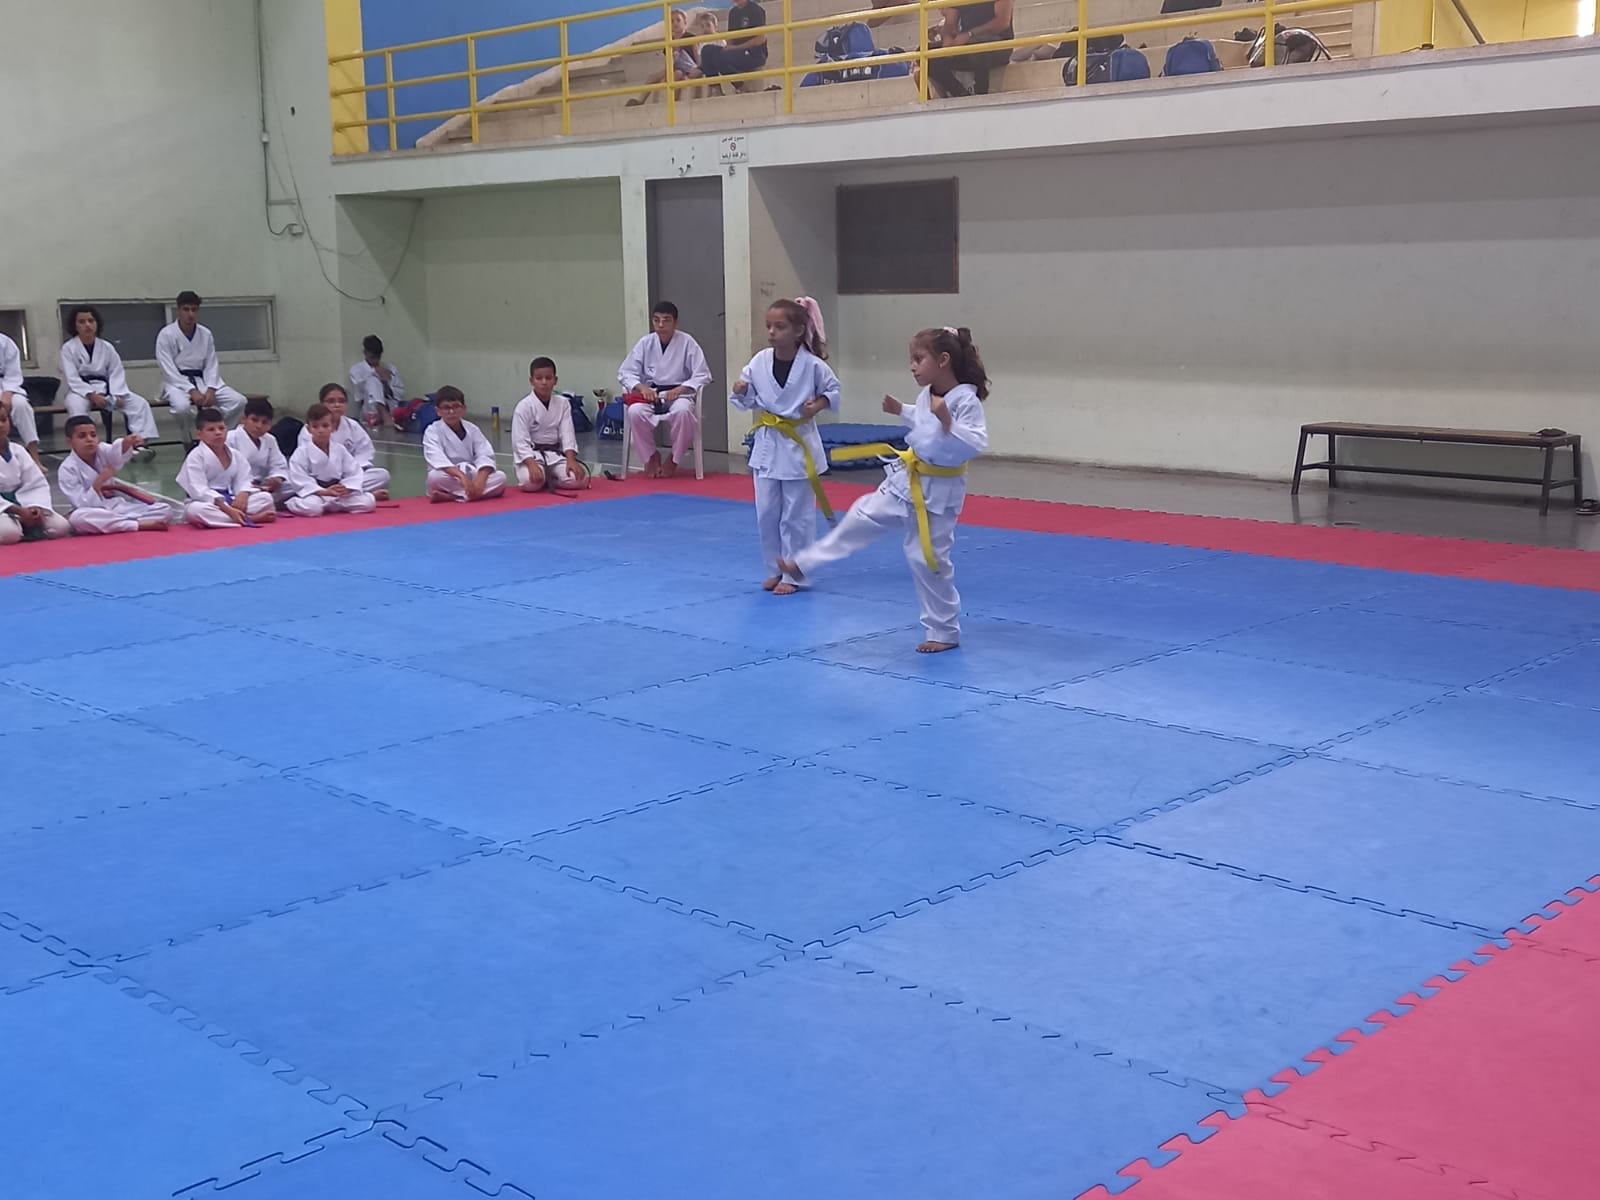 مدرسة hosni kai karate اختتمت اليوم معسكرها الصيفي السنوي